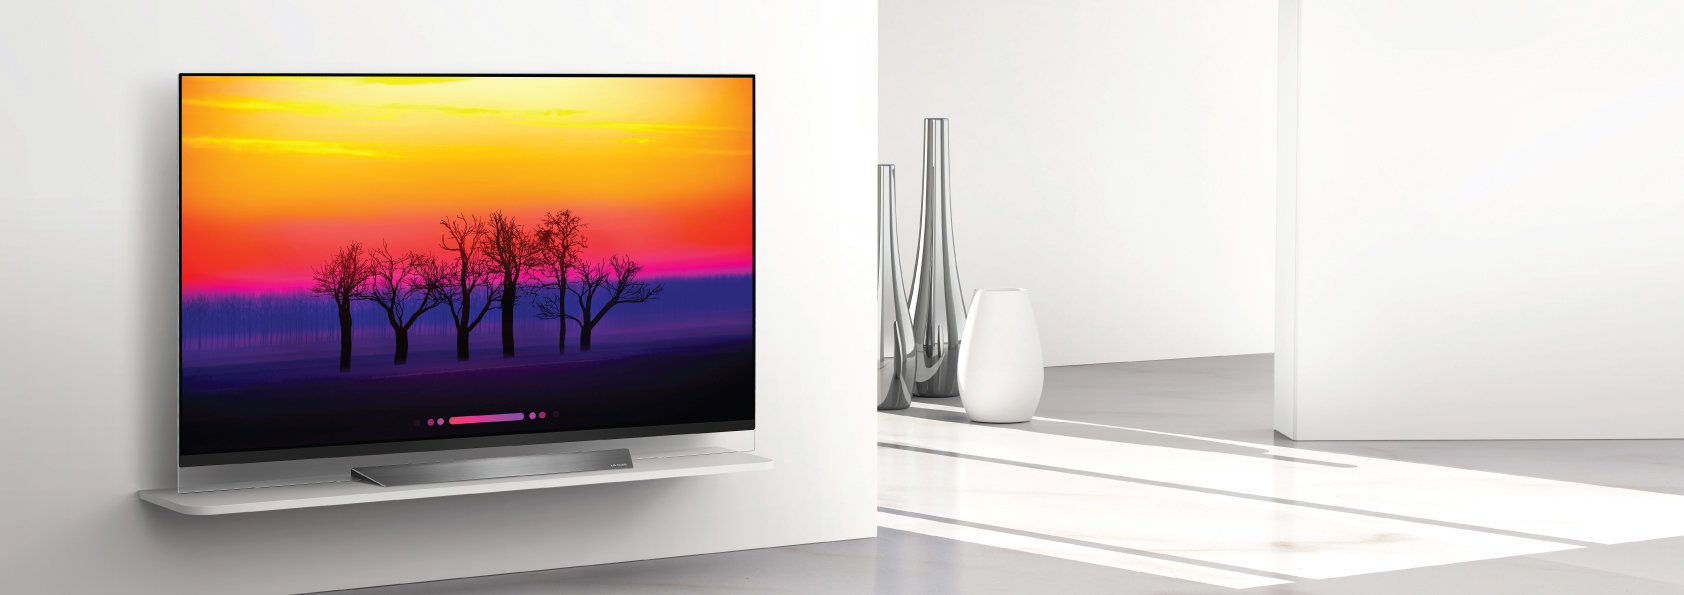 Telewizory LG OLED TV 2018 ze sztuczna inteligencją w języku polskim wchodzą na salony